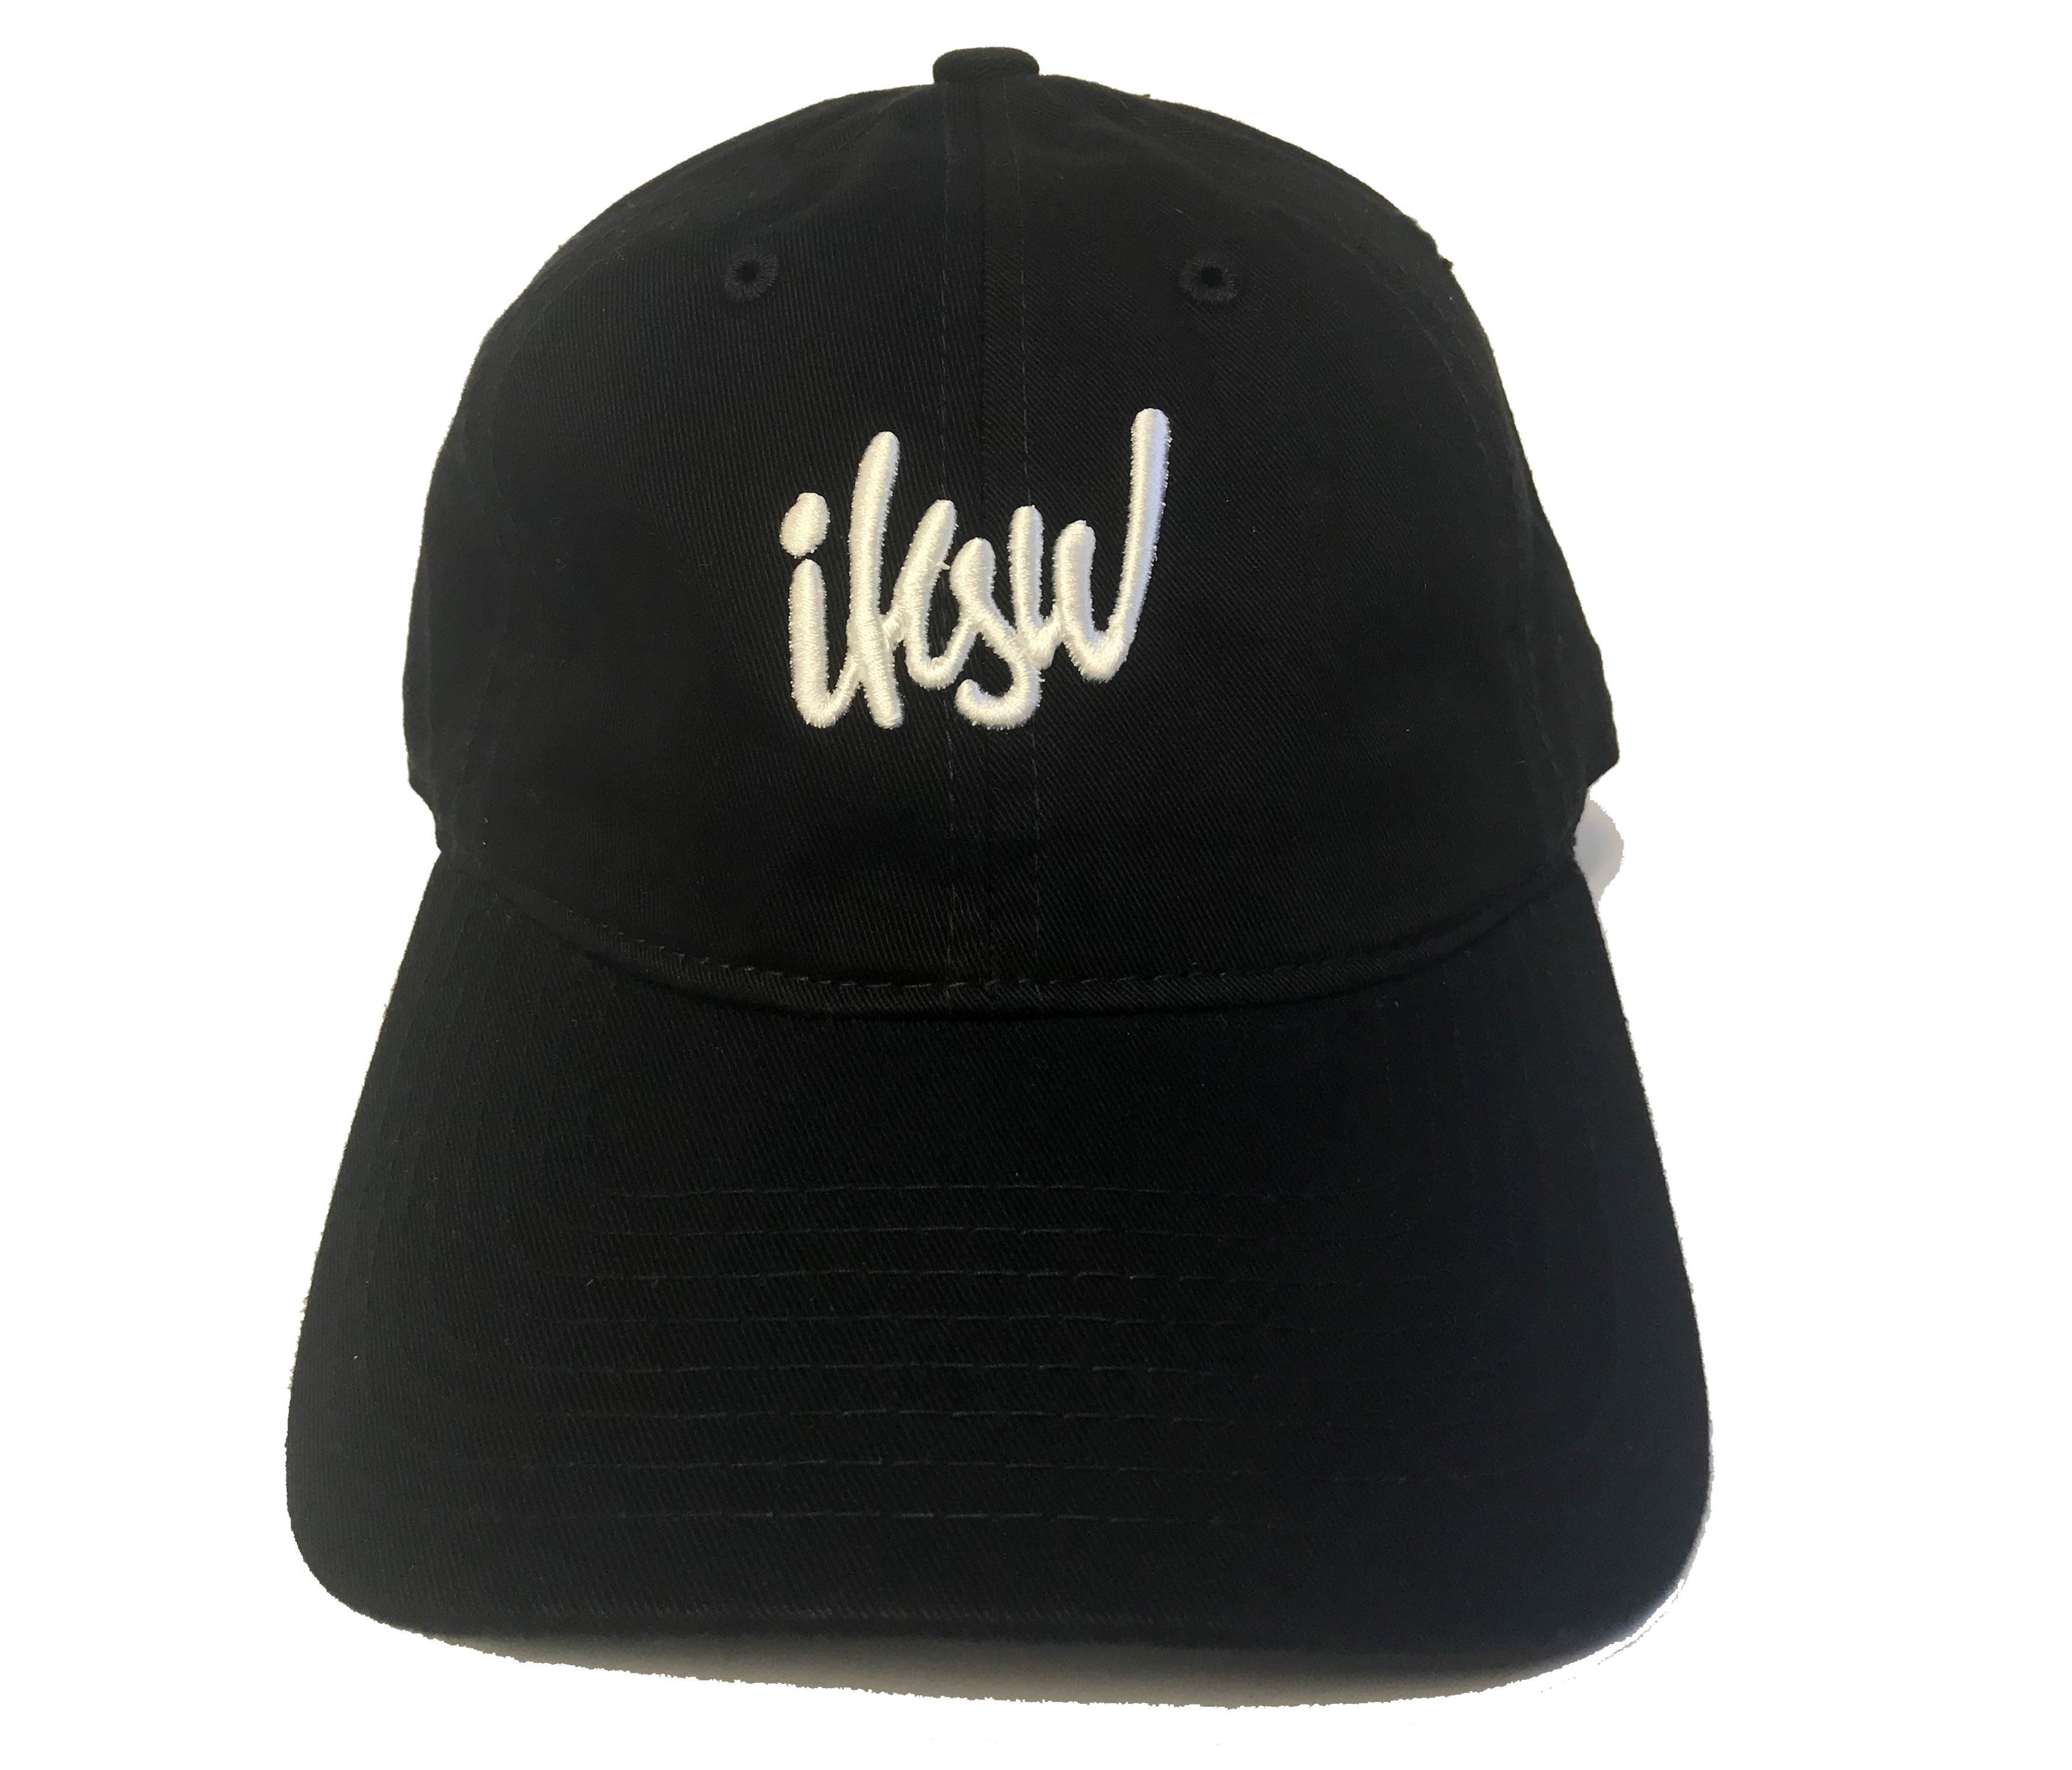 IKSW Black Dad Hat